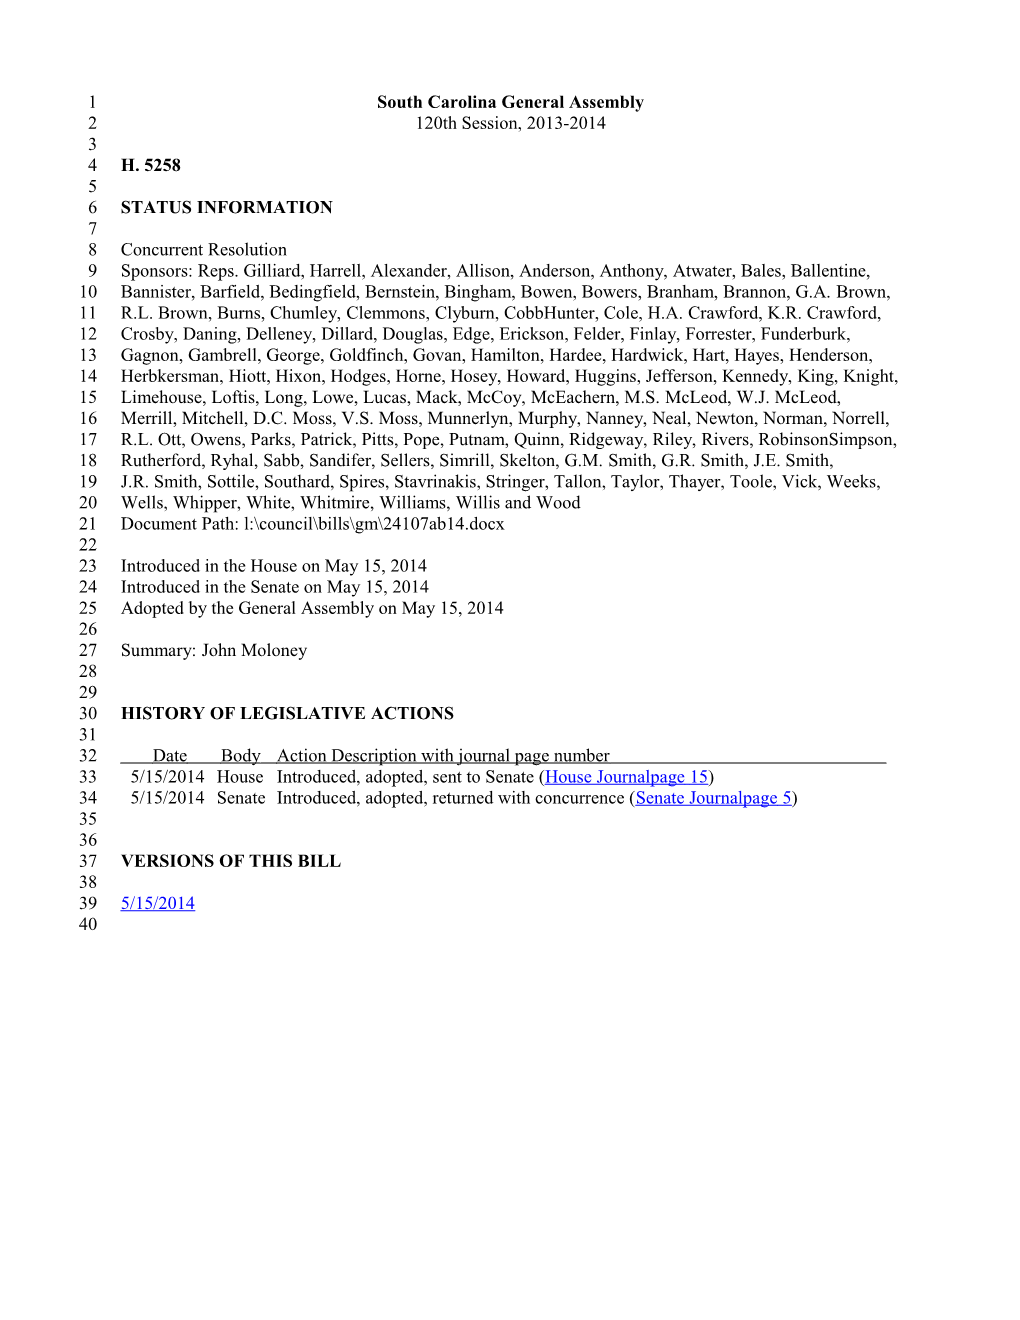 2013-2014 Bill 5258: John Moloney - South Carolina Legislature Online